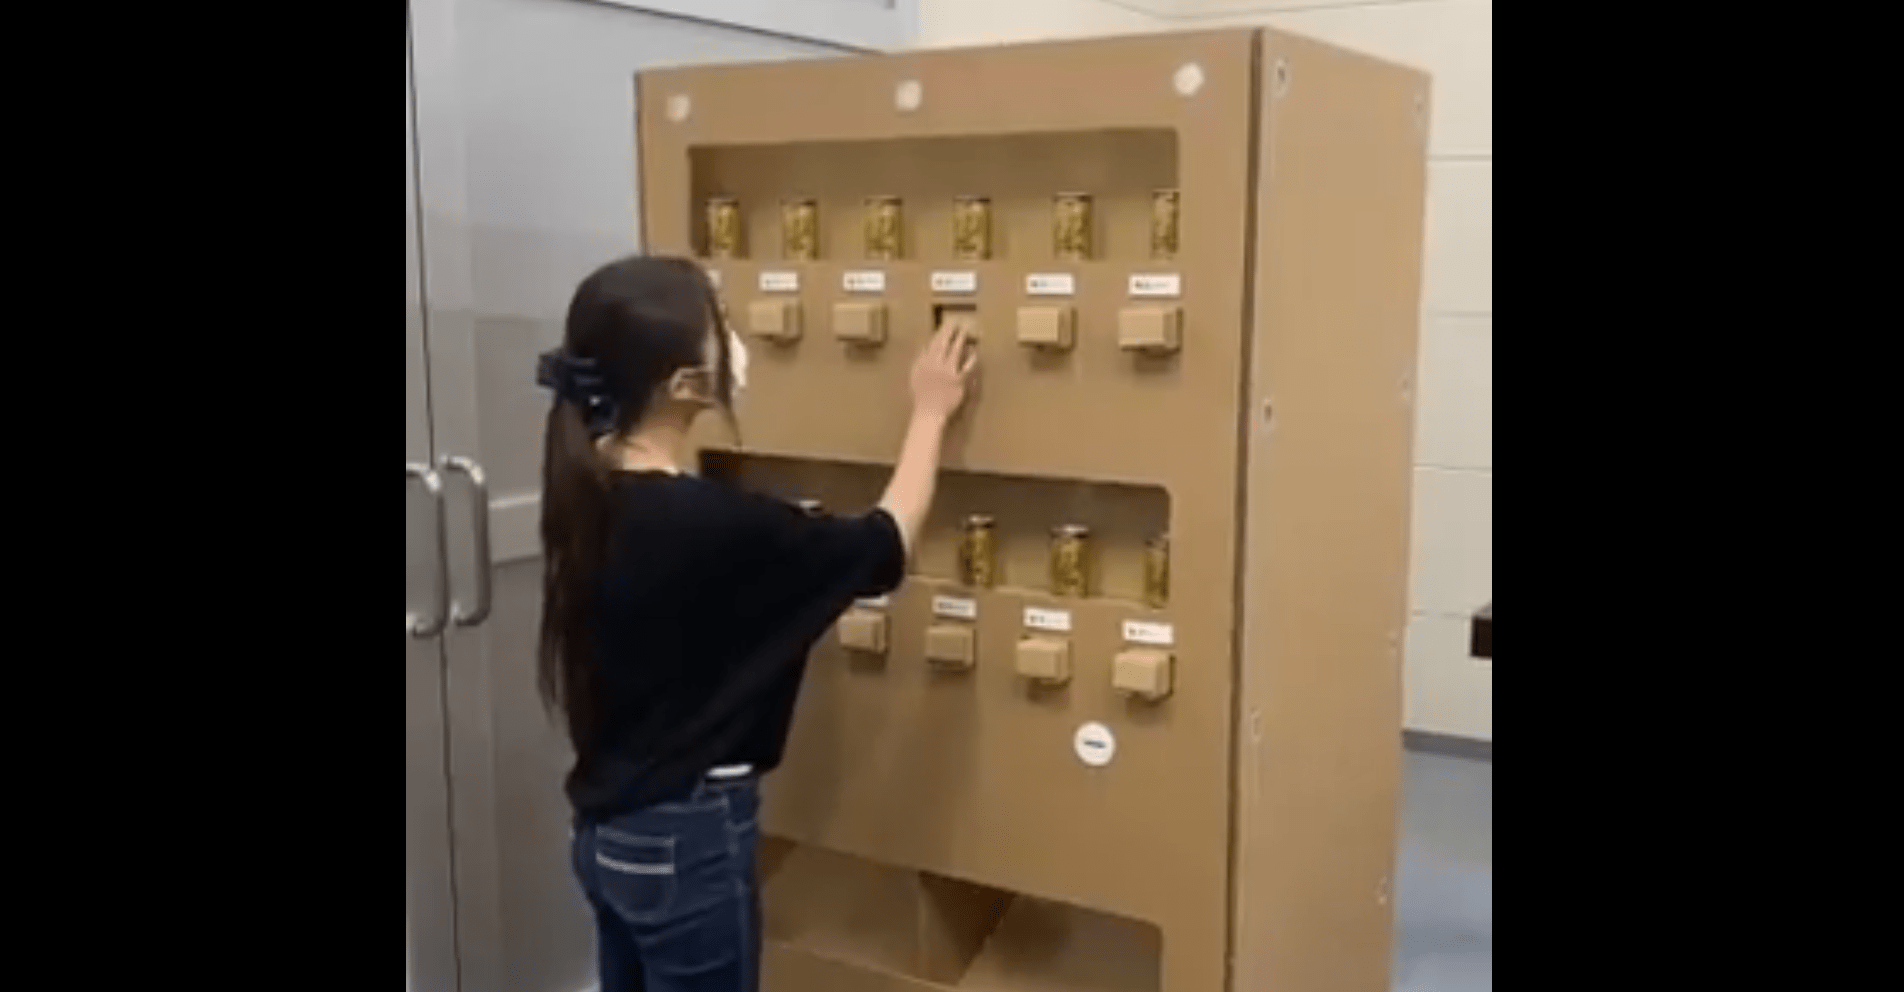 Escritório instala uma máquina de venda automática, feita de papelão, em tamanho impressionante